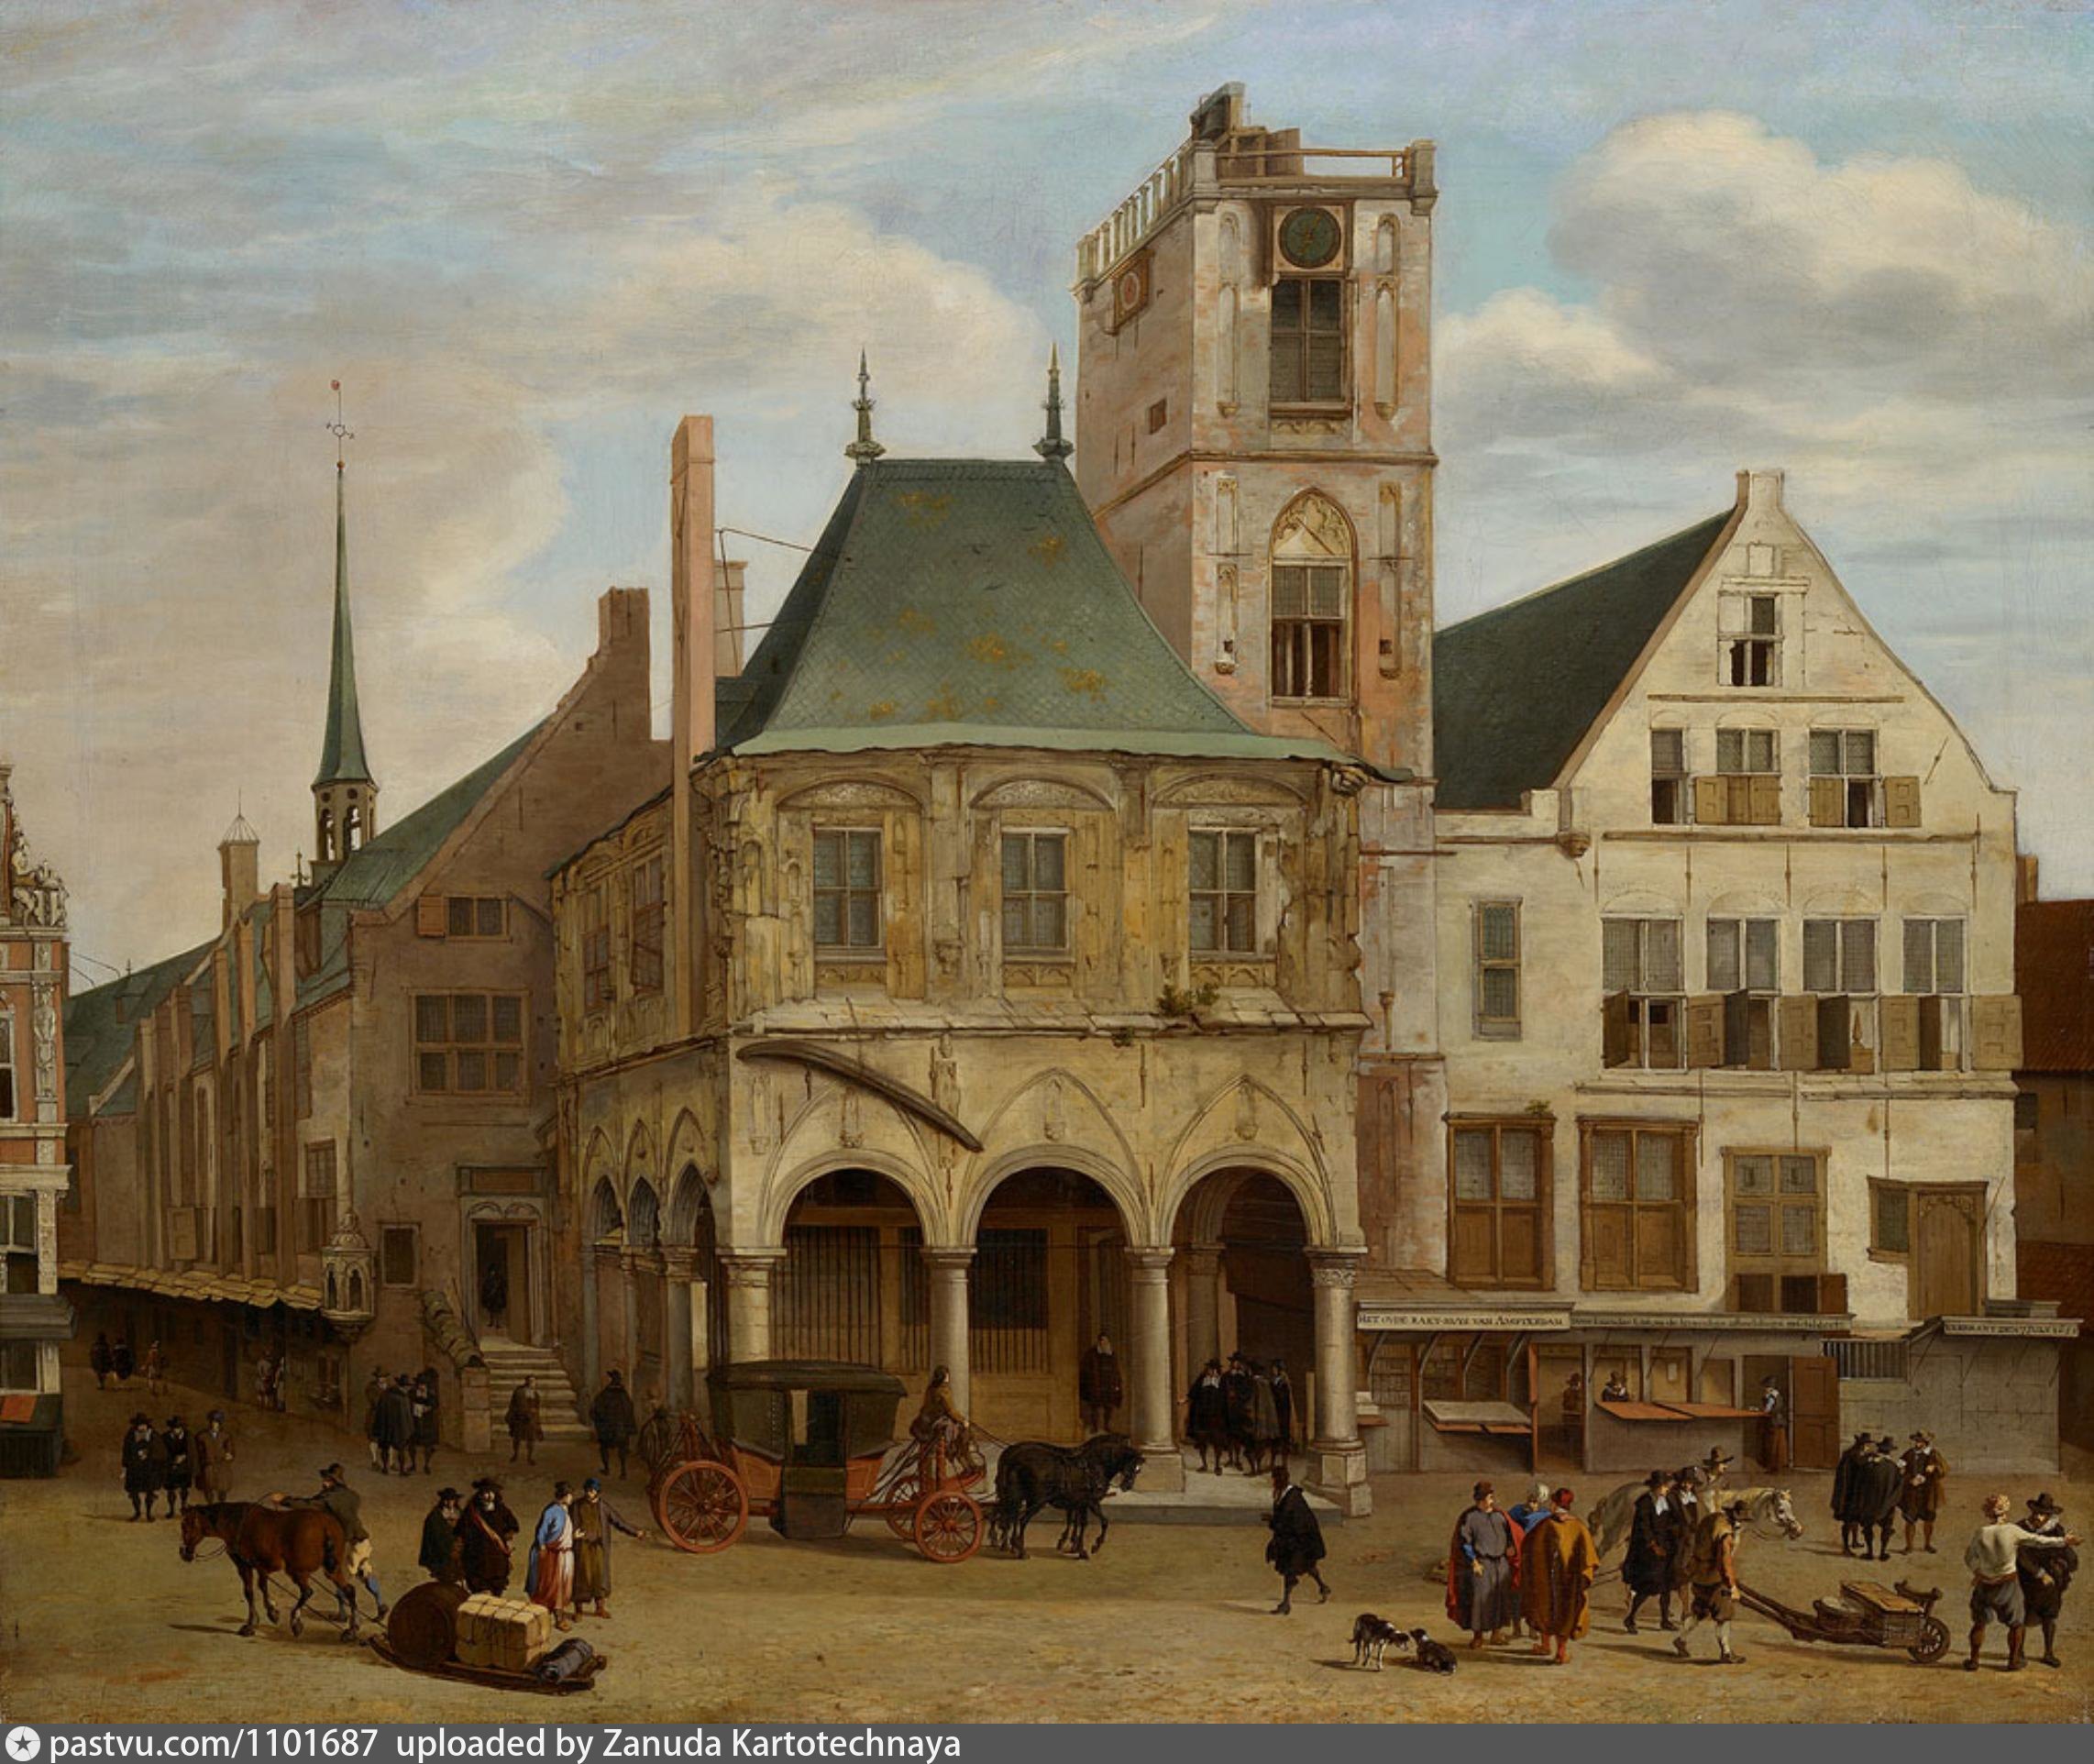 Начало 18 века в европе. Амстердамская ратуша картины 17 века. Голландия 17 век архитектура.